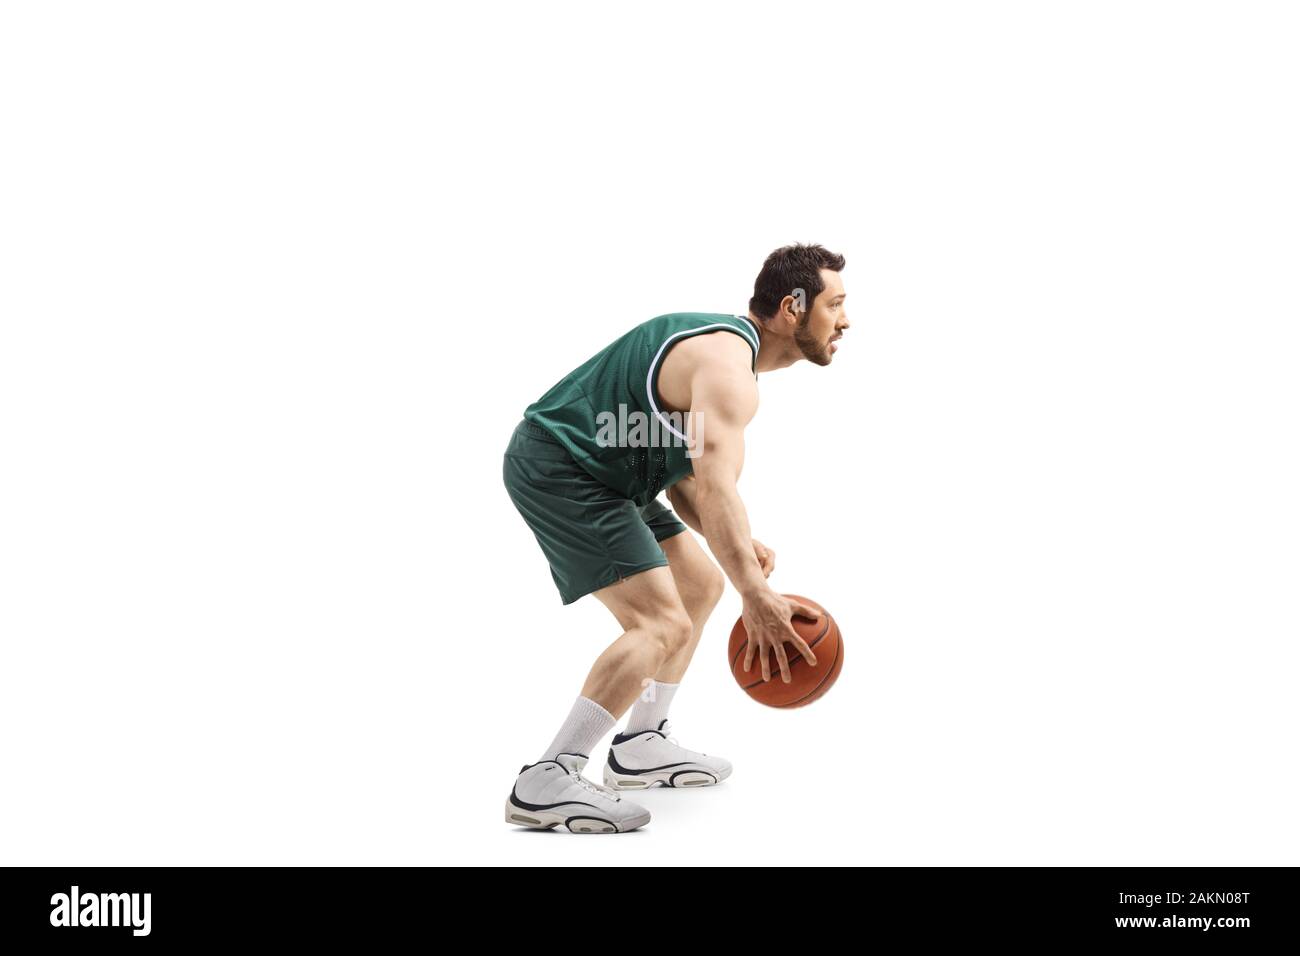 Profil de pleine longueur de balle un joueur de basket-ball dans un maillot vert avec un ballon isolé sur fond blanc Banque D'Images